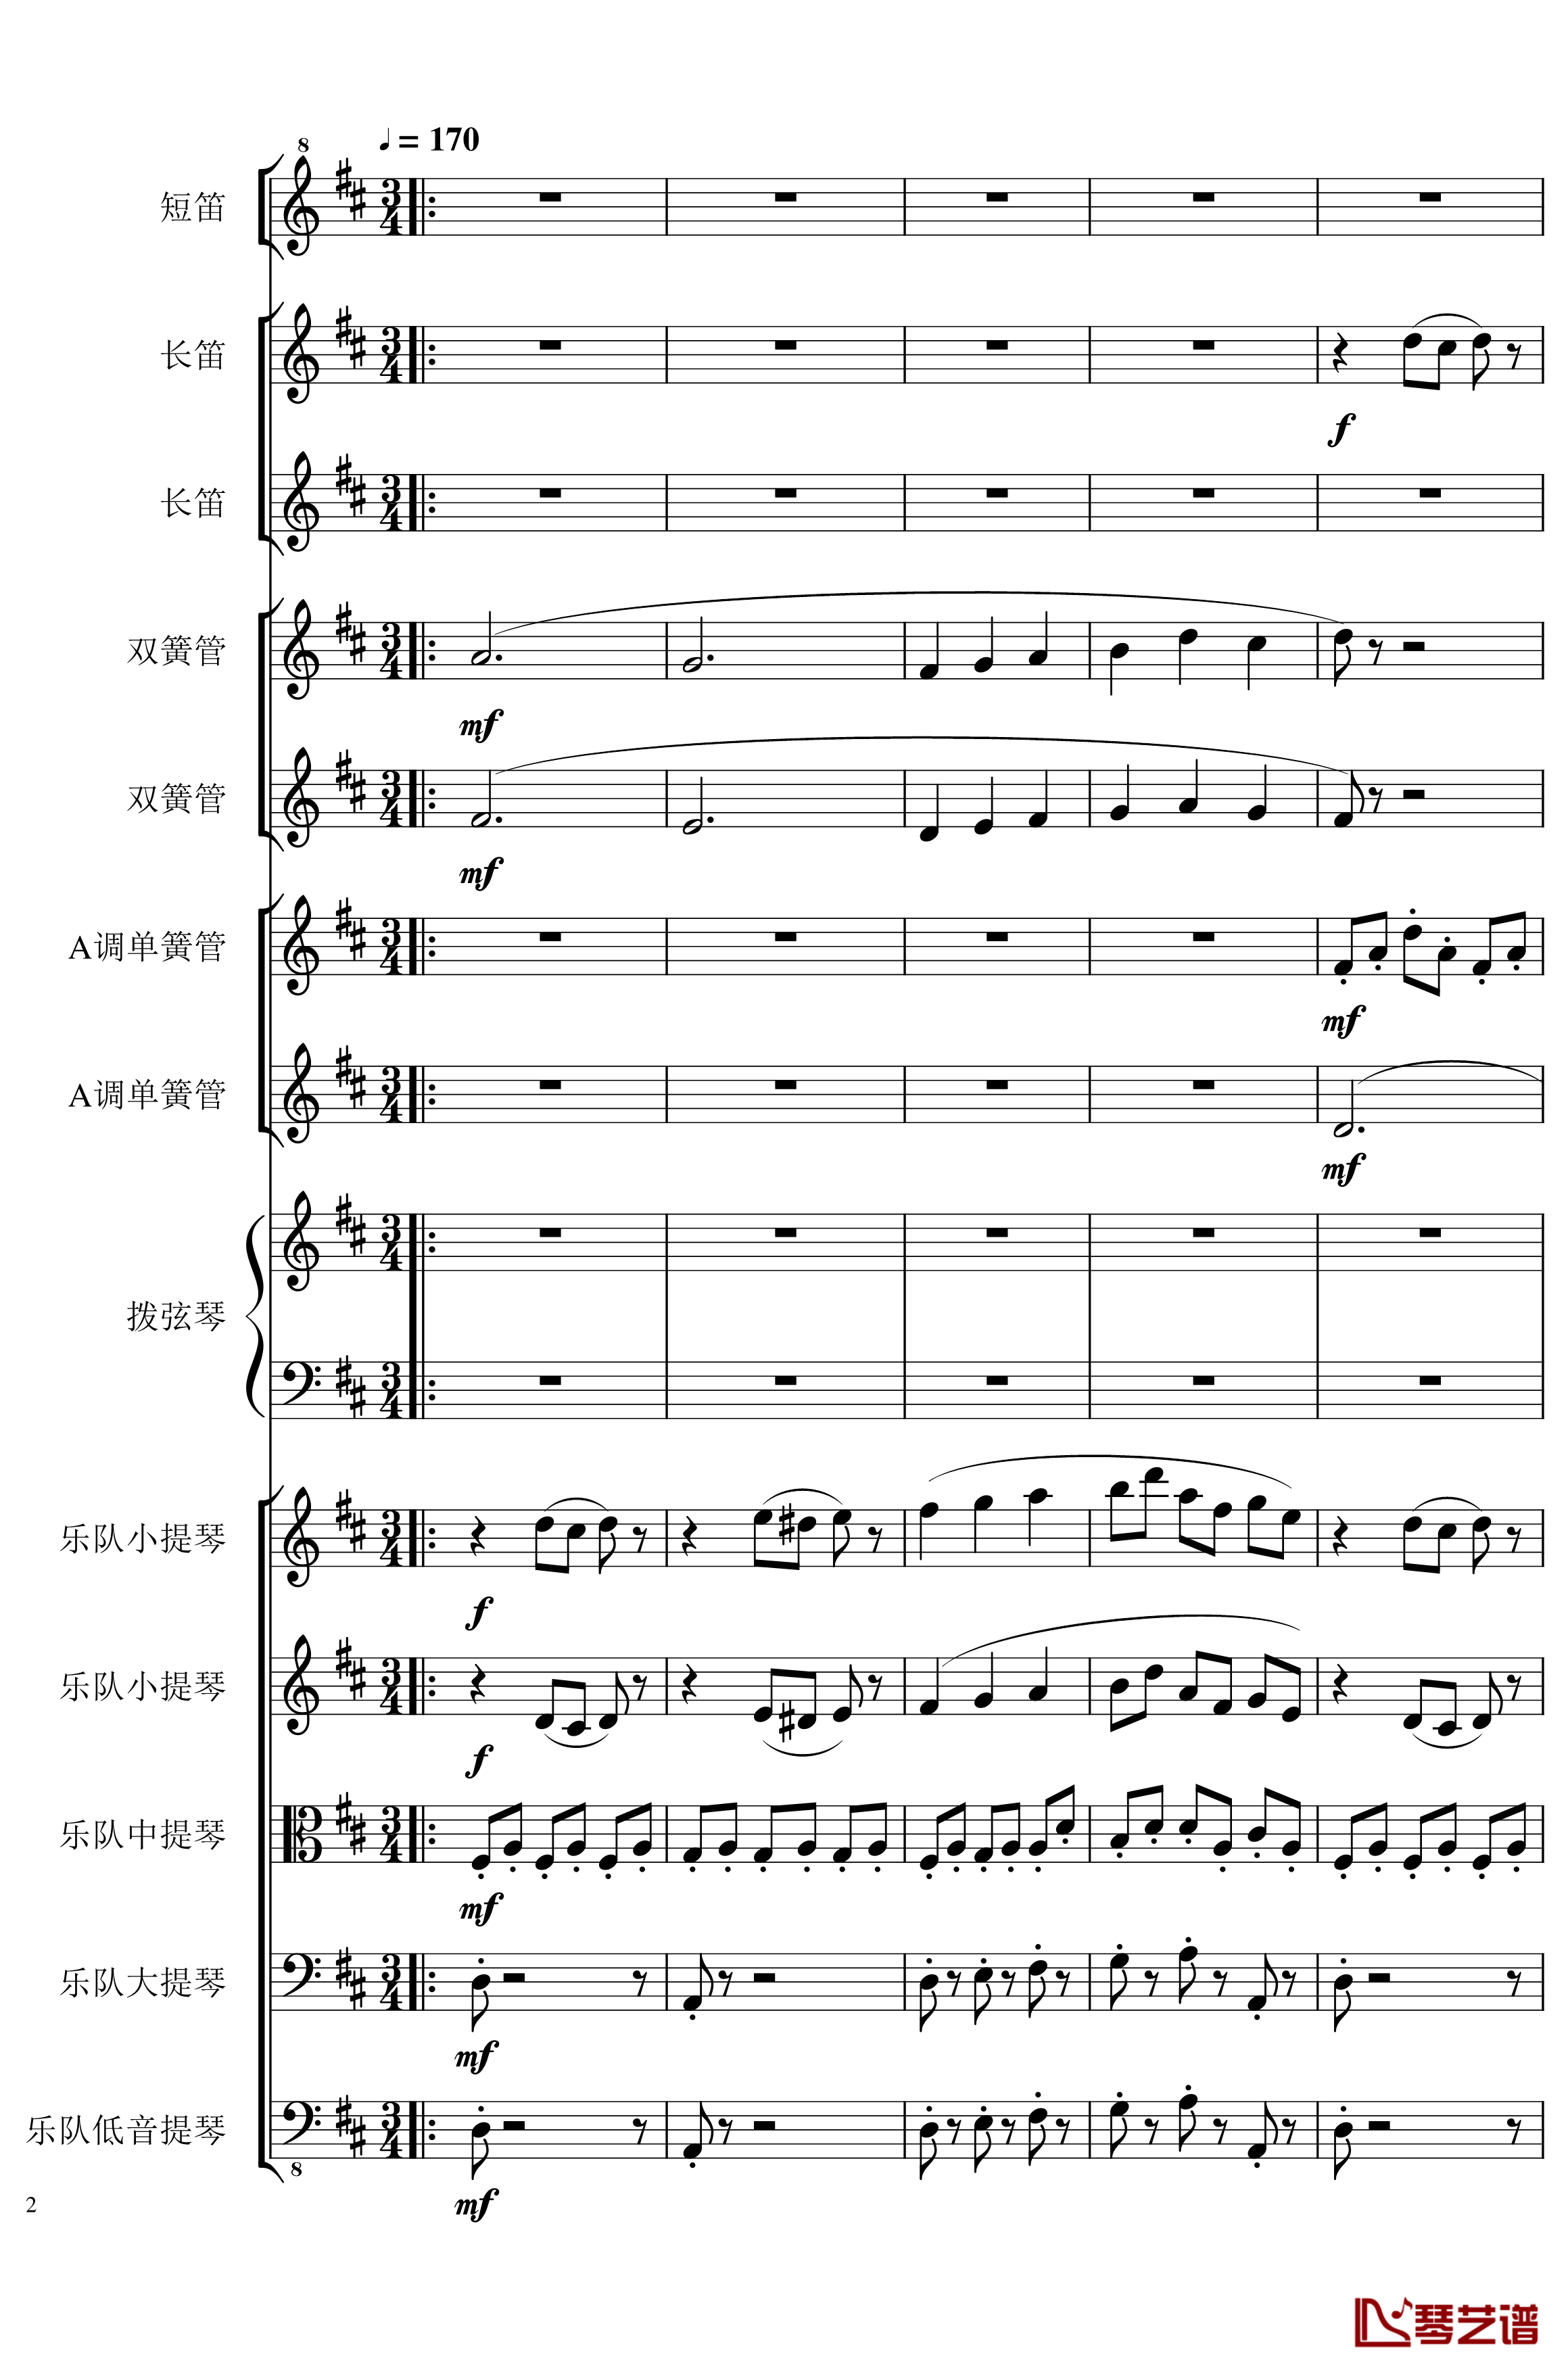 7 Contredanses No.1-7, Op.124钢琴谱-7首乡村舞曲，第一至第七，作品124-一个球2